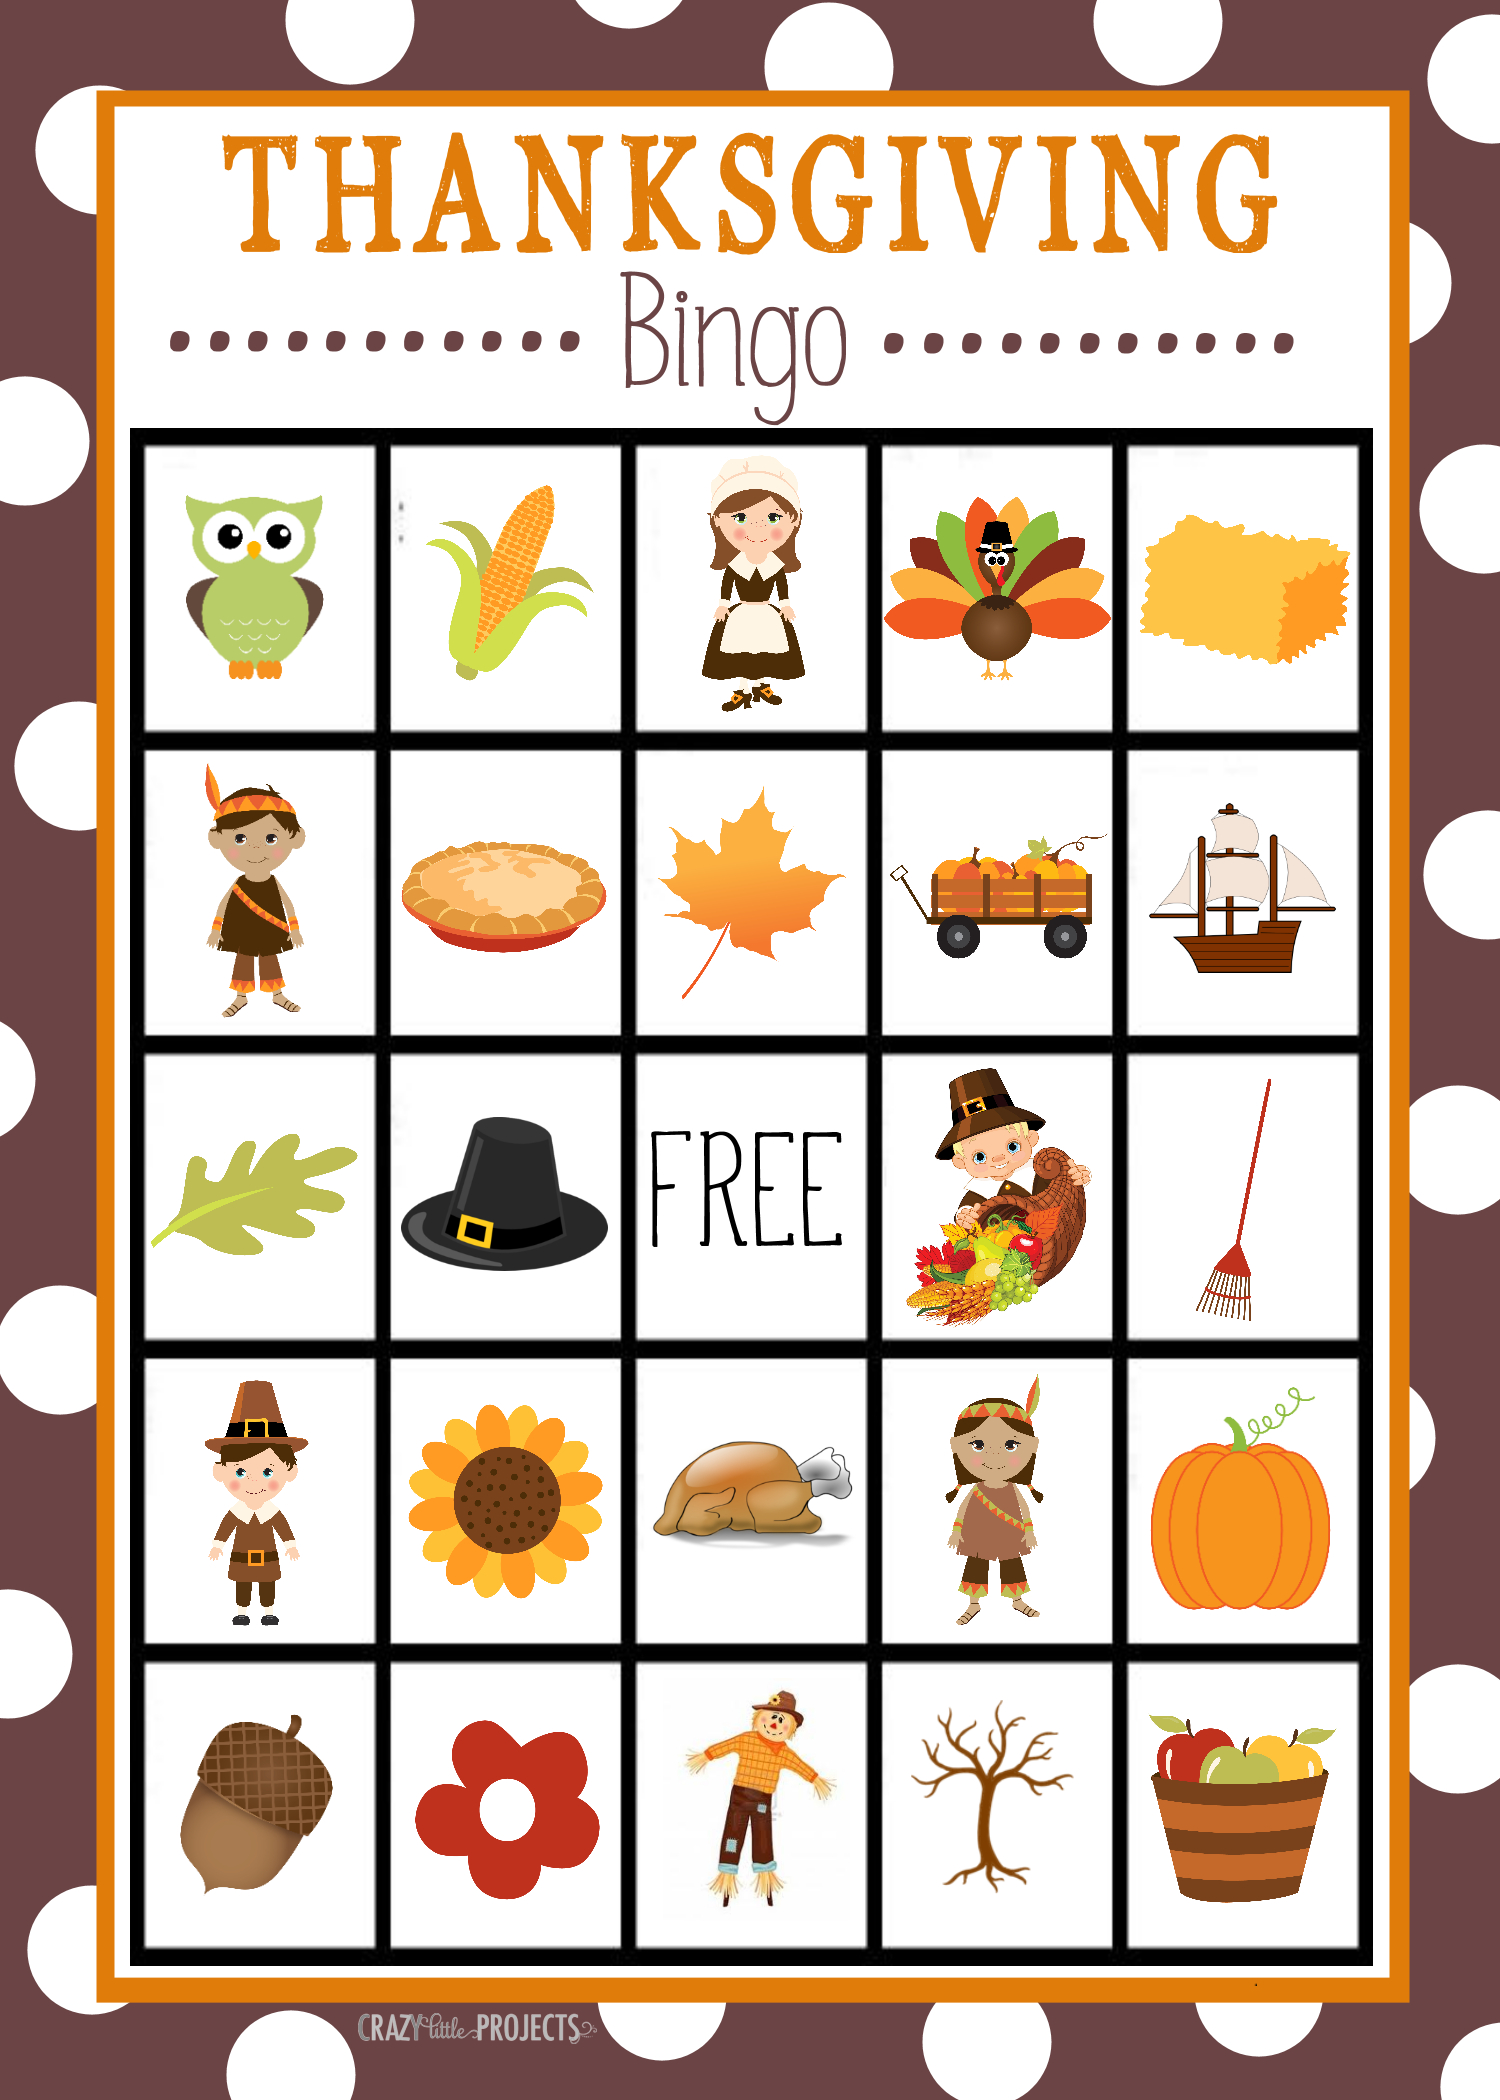 Free Printable Thanksgiving Bingo Game | Craft Time | Pinterest - Free Printable Thanksgiving Graphics